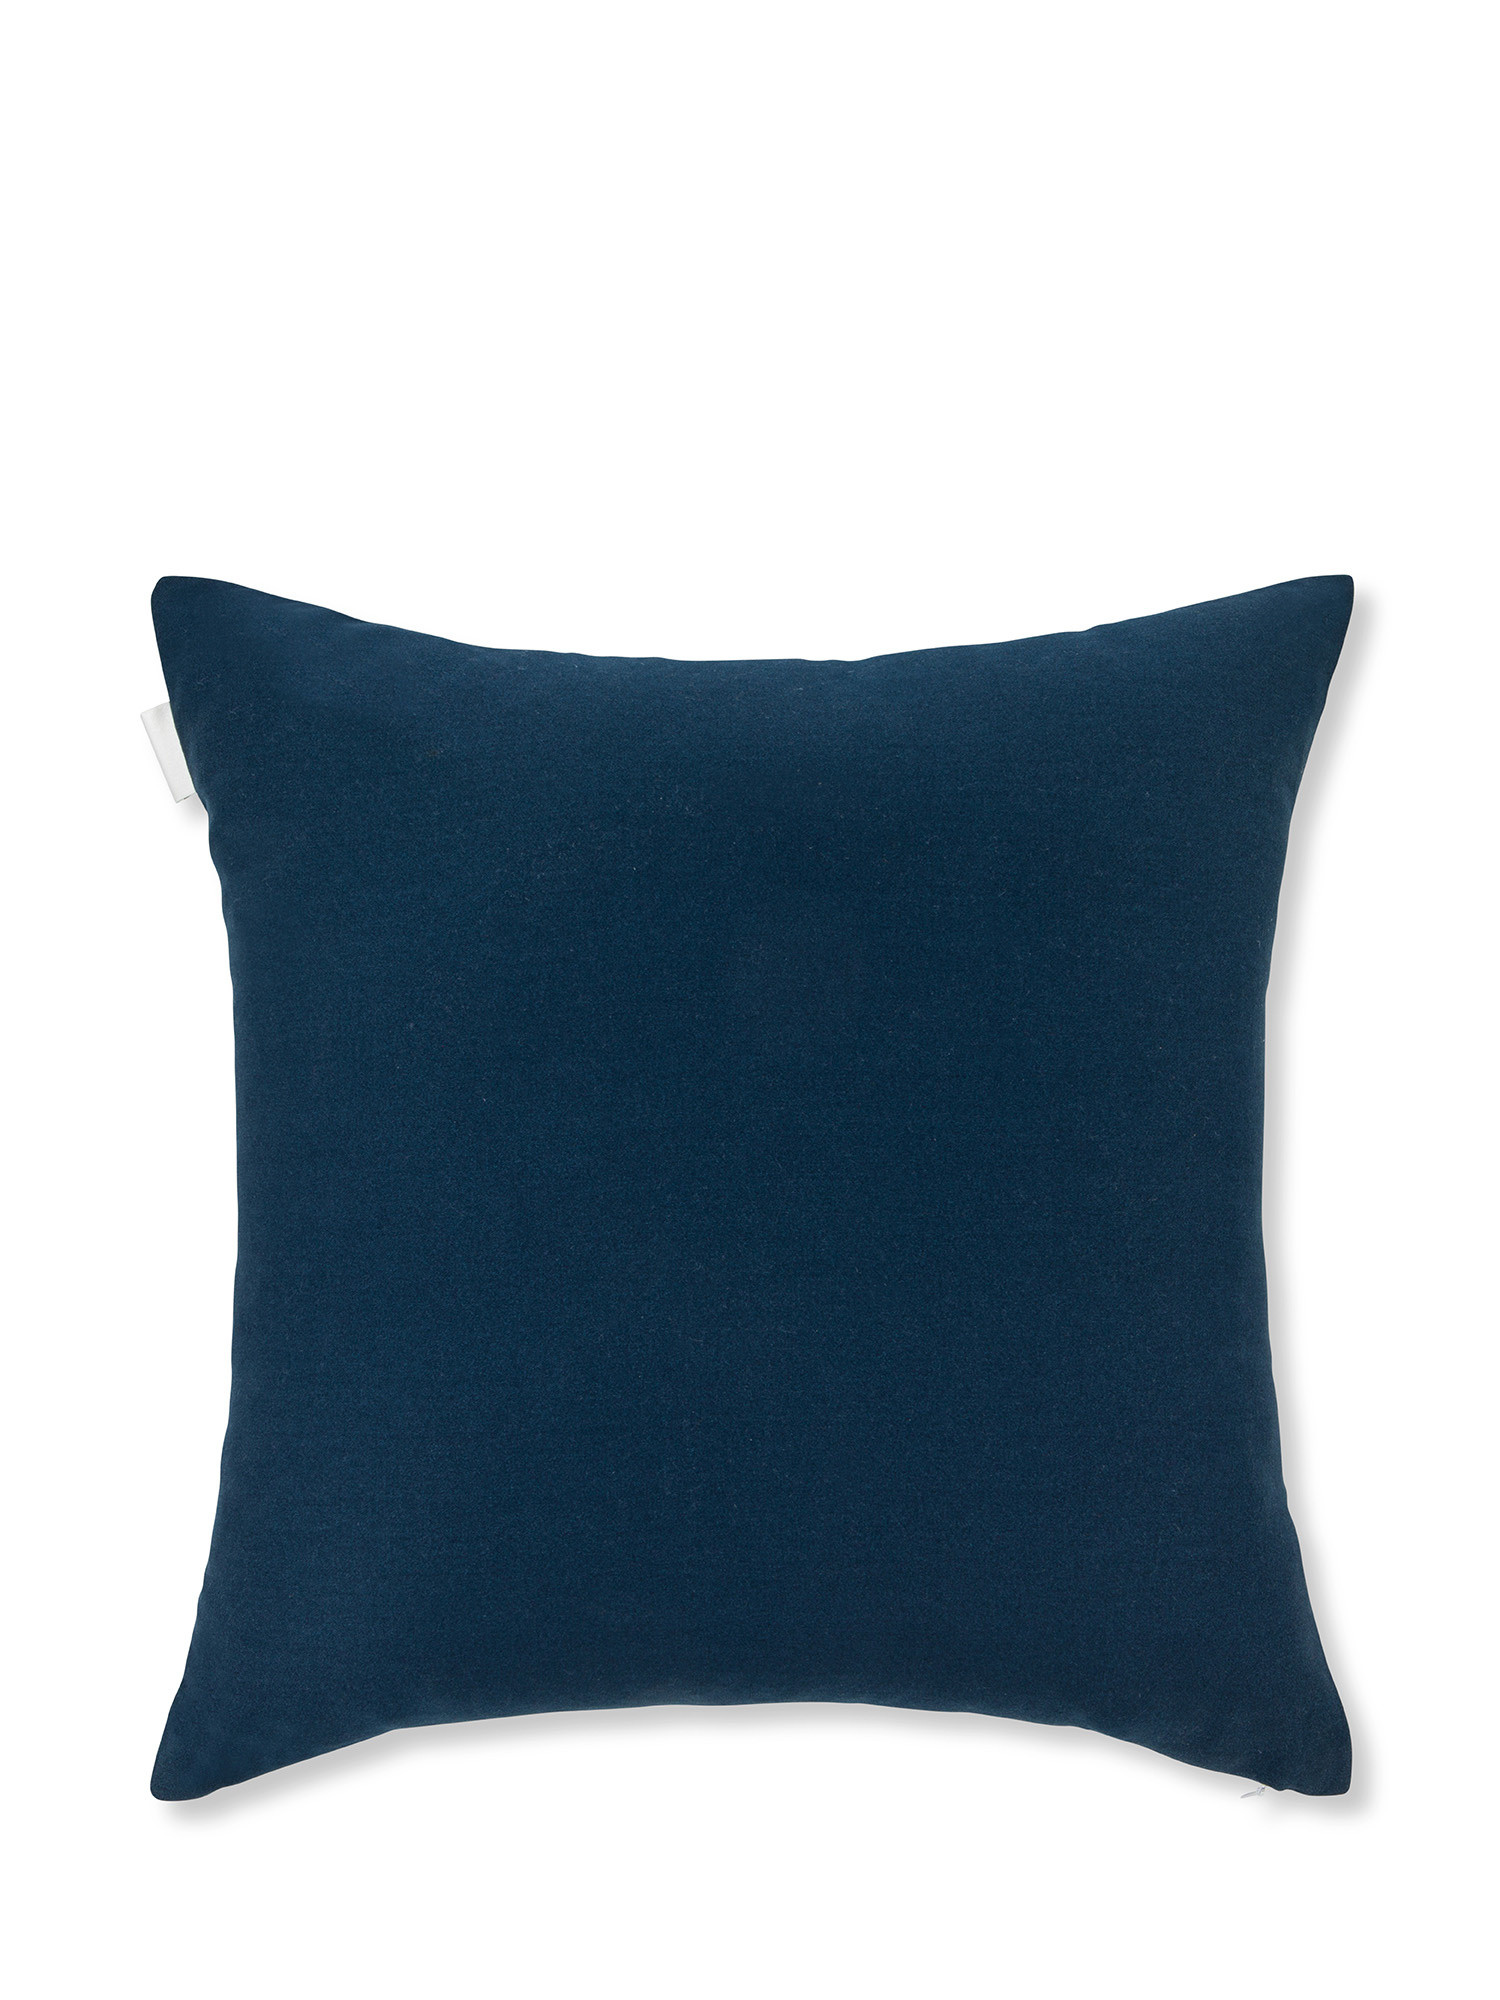 Cuscino twill di cotone con impunture 45x45cm, Blu scuro, large image number 1